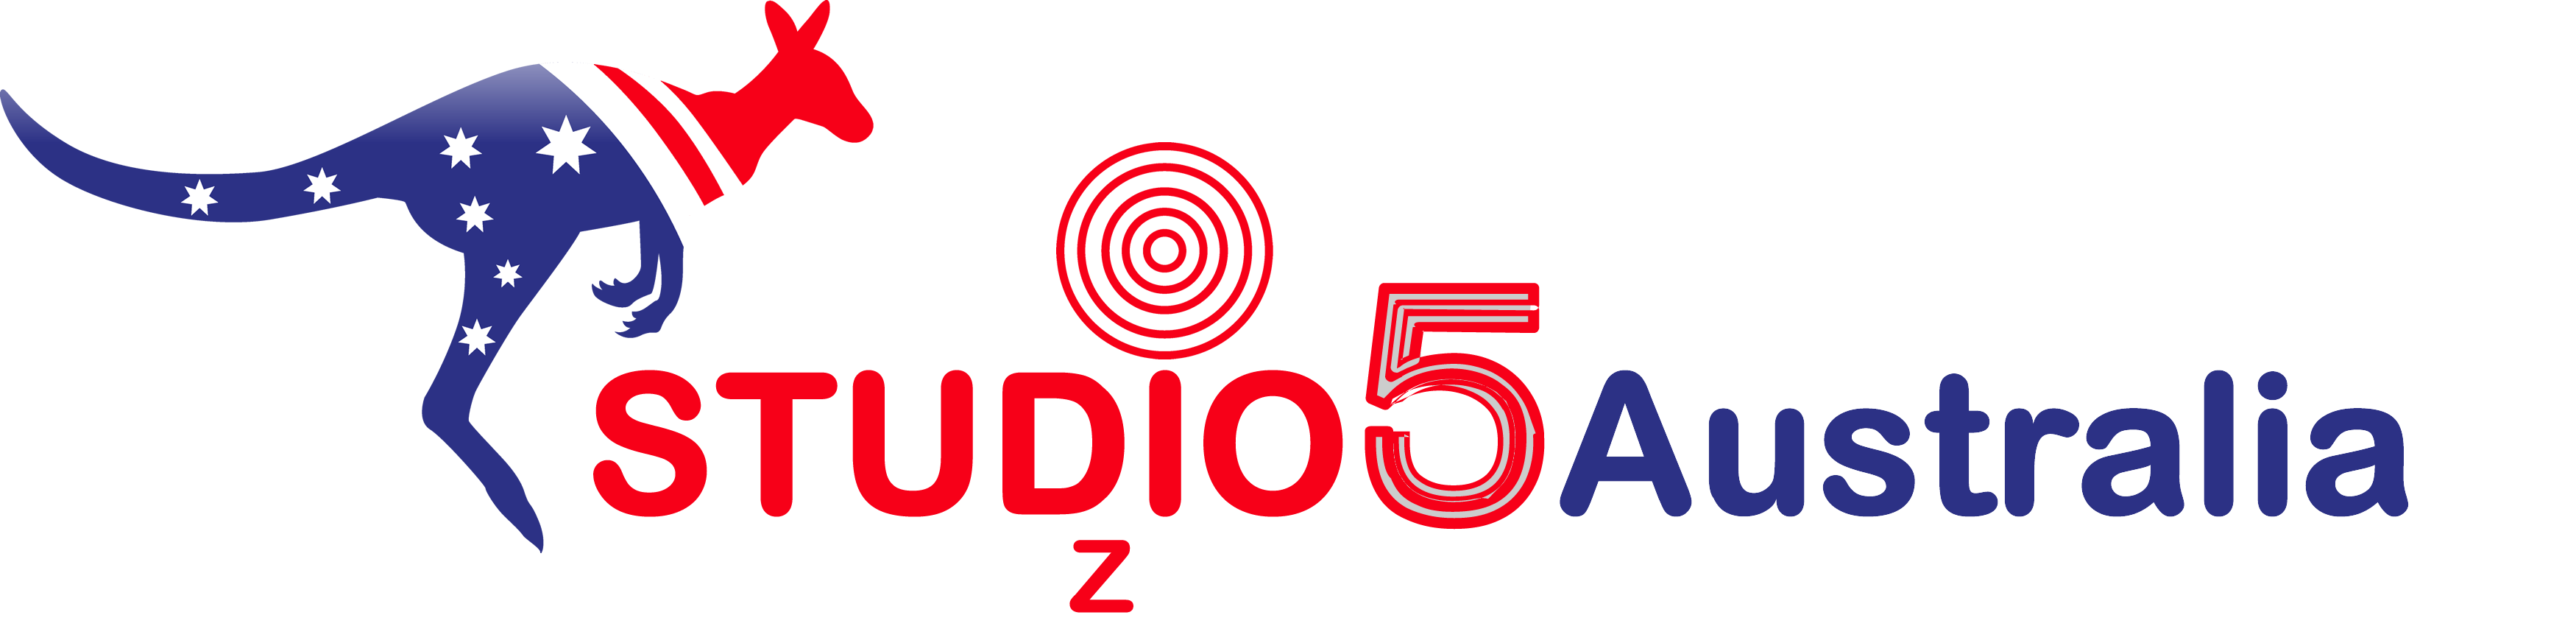 The Studio5 Australia